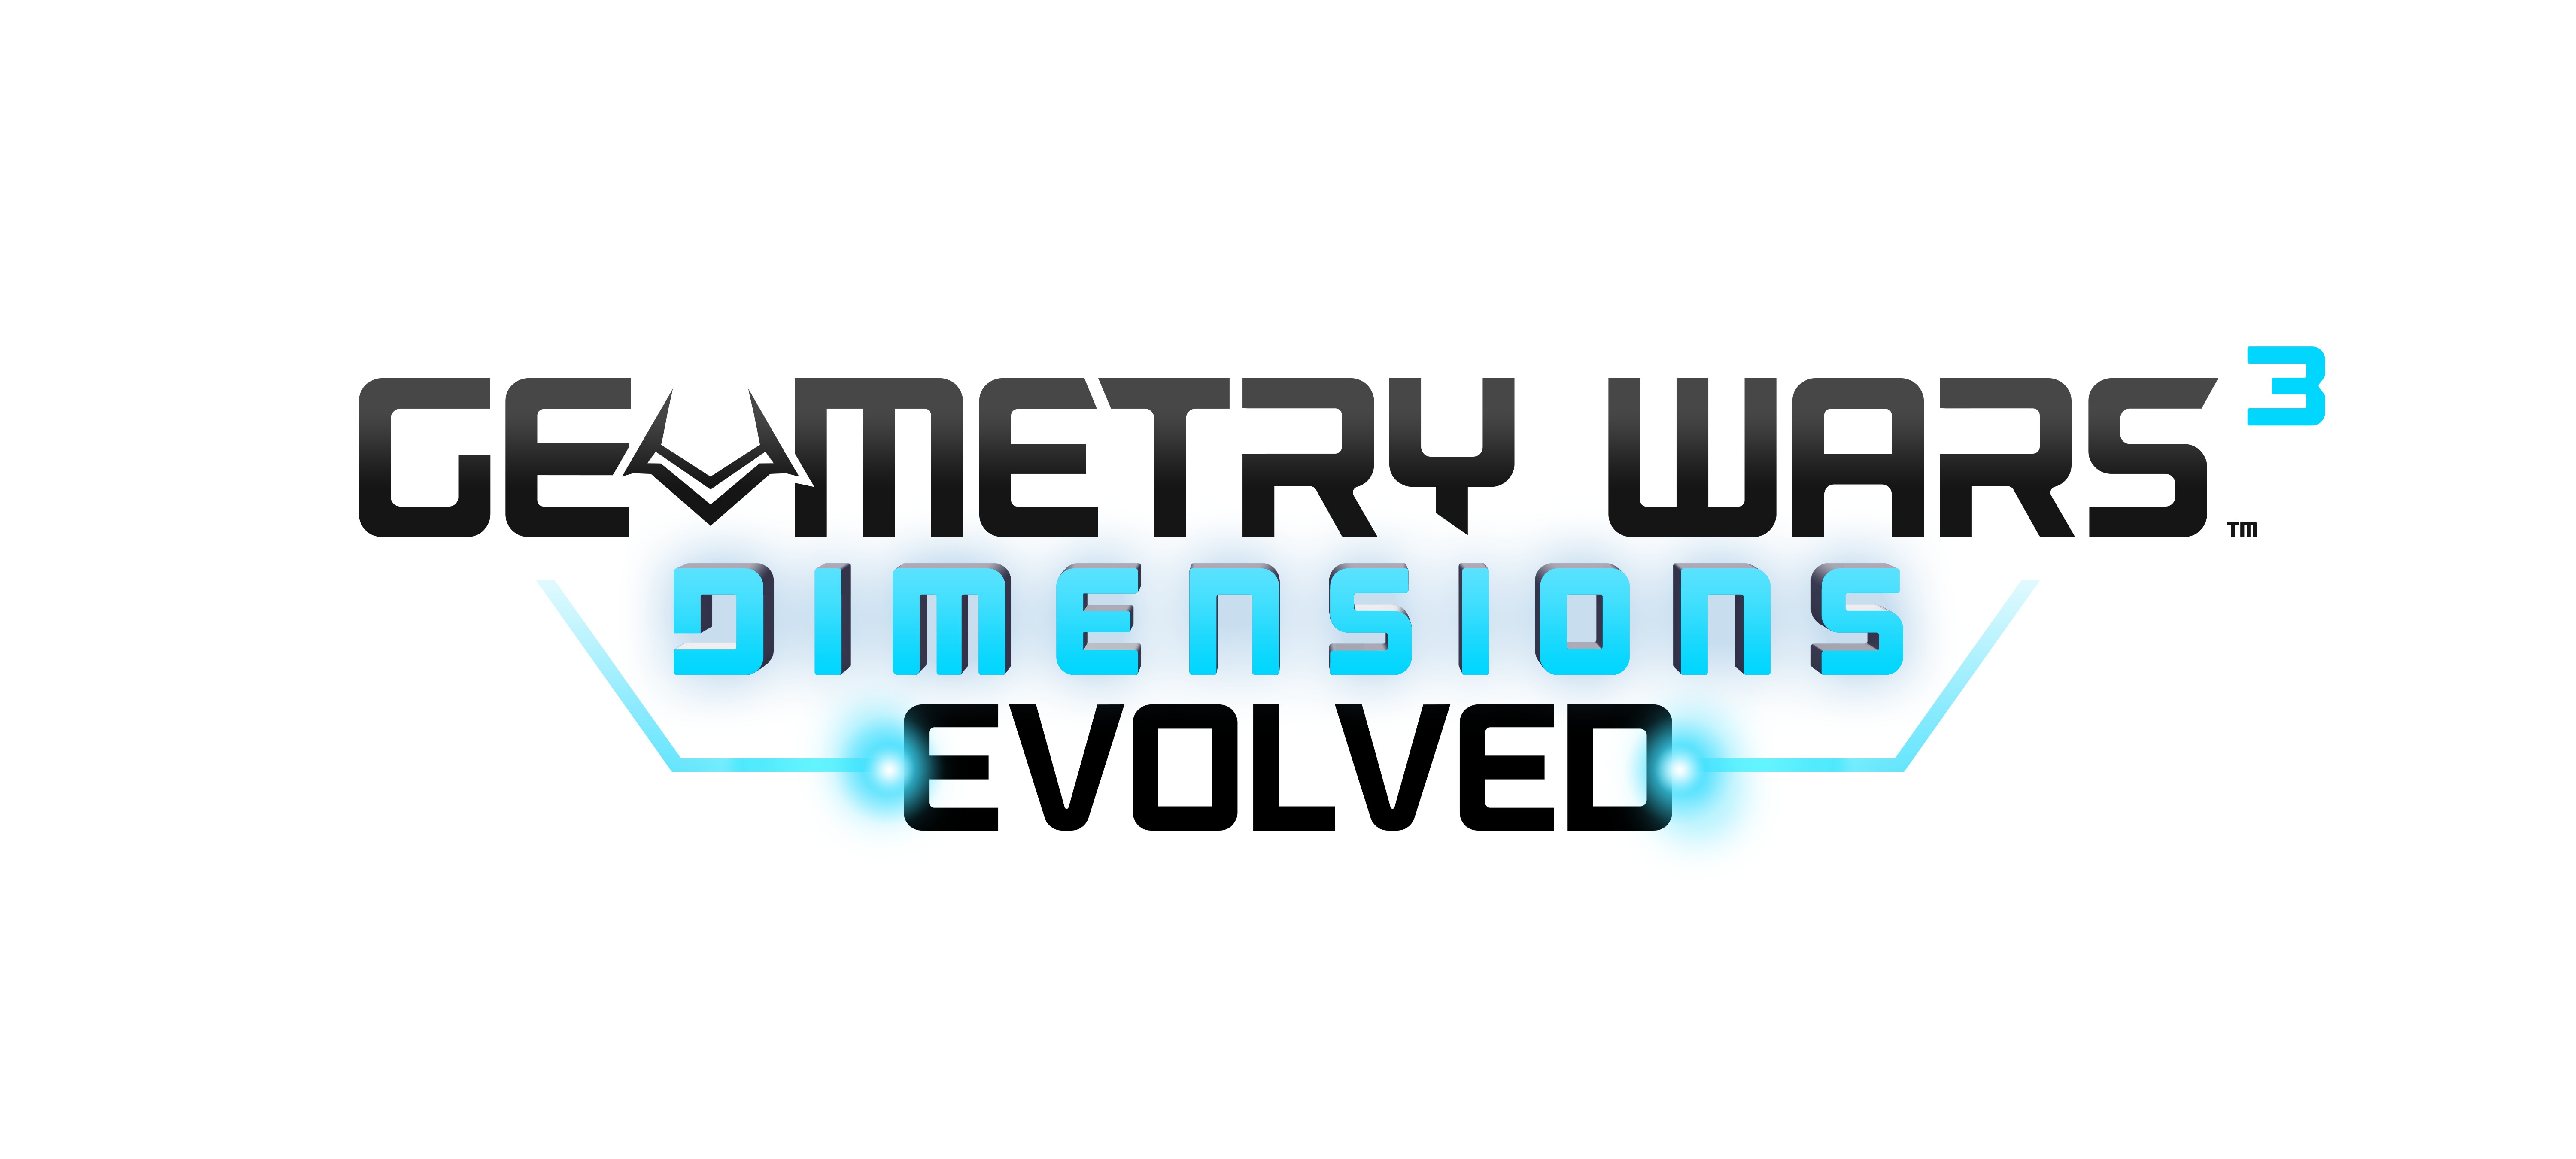 geometry wars 3 dimensions gamestop